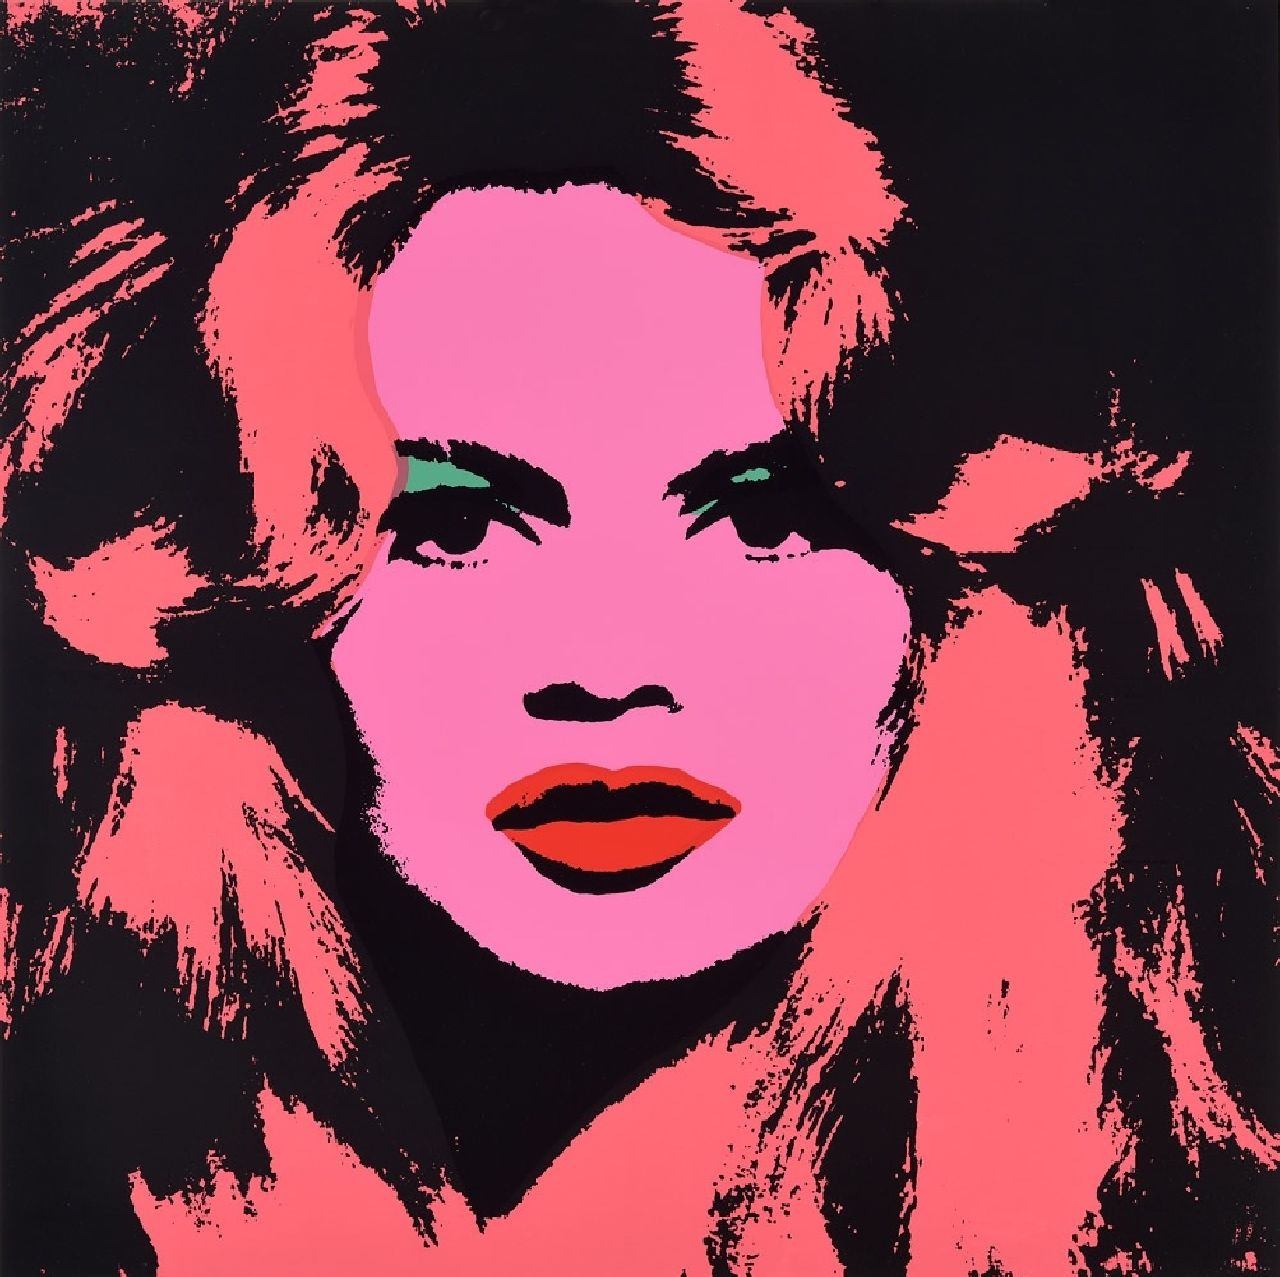 Naar Andy Warhol   | Naar Andy Warhol | Grafiek te koop aangeboden | Brigitte Bardot, zeefdruk op papier 91,0 x 91,0 cm, prijs zonder lijst